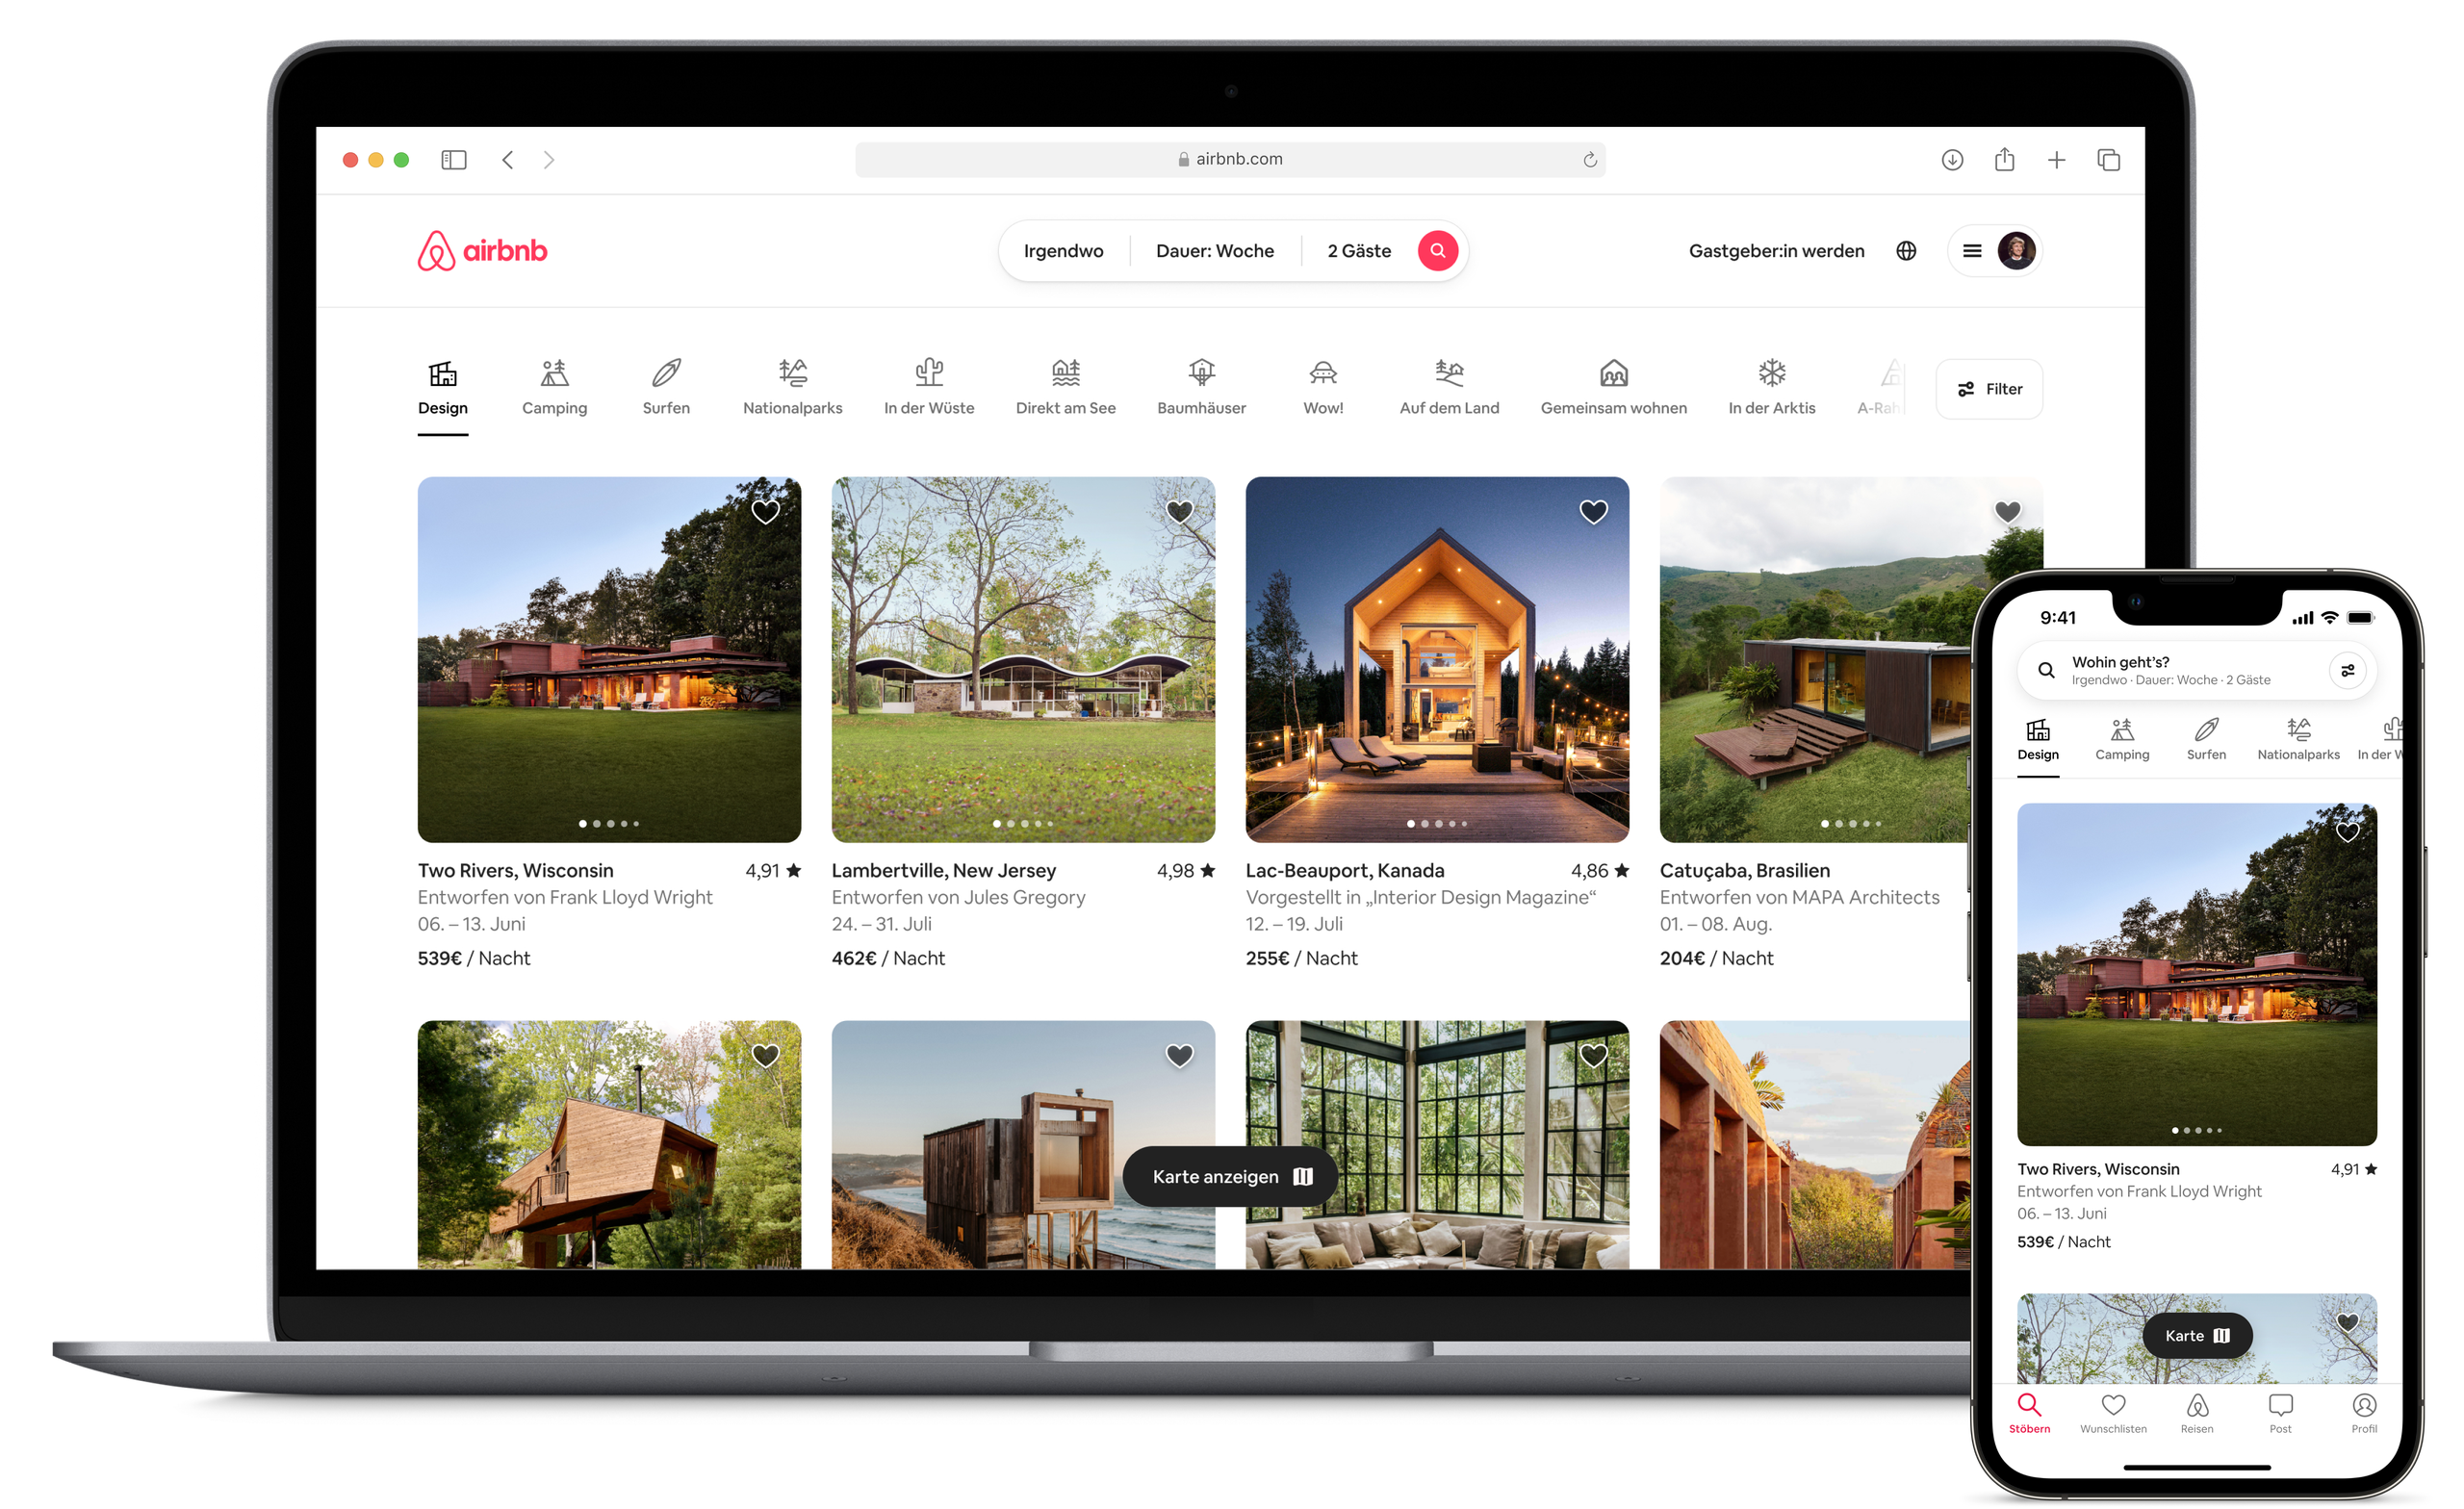 Ein geöffneter Laptop und ein Handy zeigen die neue Airbnb-Startseite an, auf der Inseratsfotos aus der Design-Kategorie auf Airbnb zu sehen sind. Eine Reihe von Symbolen oben auf der Seite zeigt die verschiedenen Kategorien, die Gäste erkunden können.